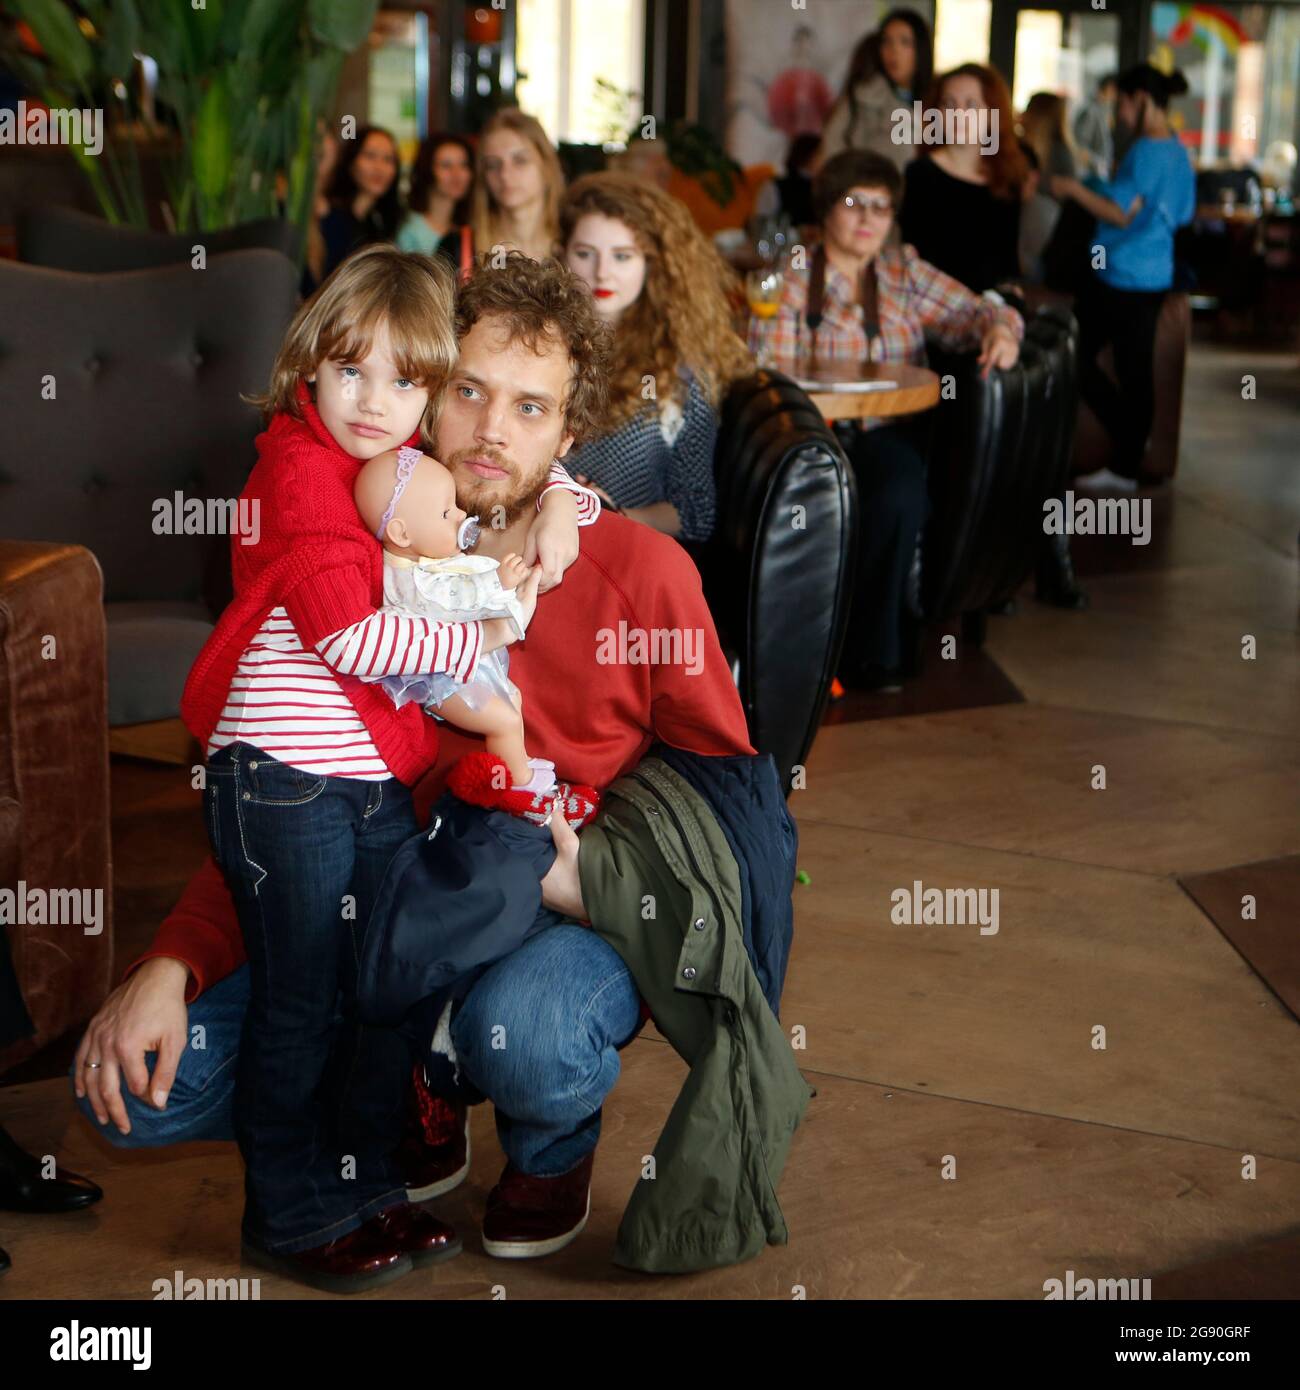 Schönes Natalia Vodianova Look-alike kleines Mädchen in roten Pullover und Jeans + Spielzeug in den Händen fotografiert mit ihrem Vater bei der Modepräsentation in Kiew Stockfoto